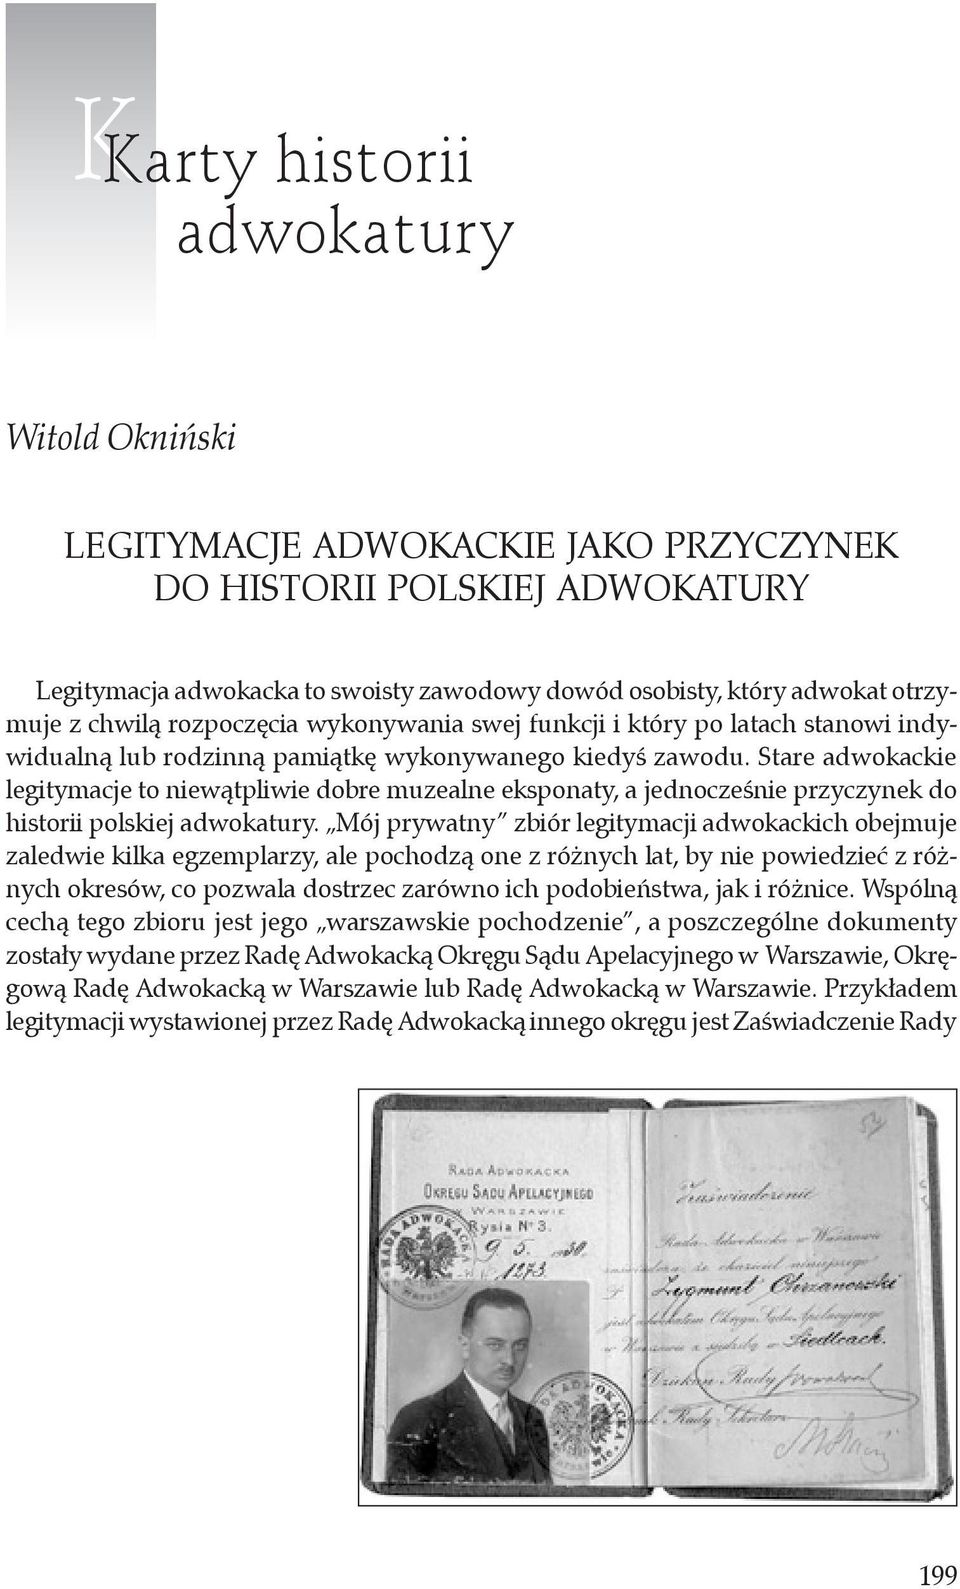 Stare adwokackie legitymacje to niewątpliwie dobre muzealne eksponaty, a jednocześnie przyczynek do historii polskiej adwokatury.